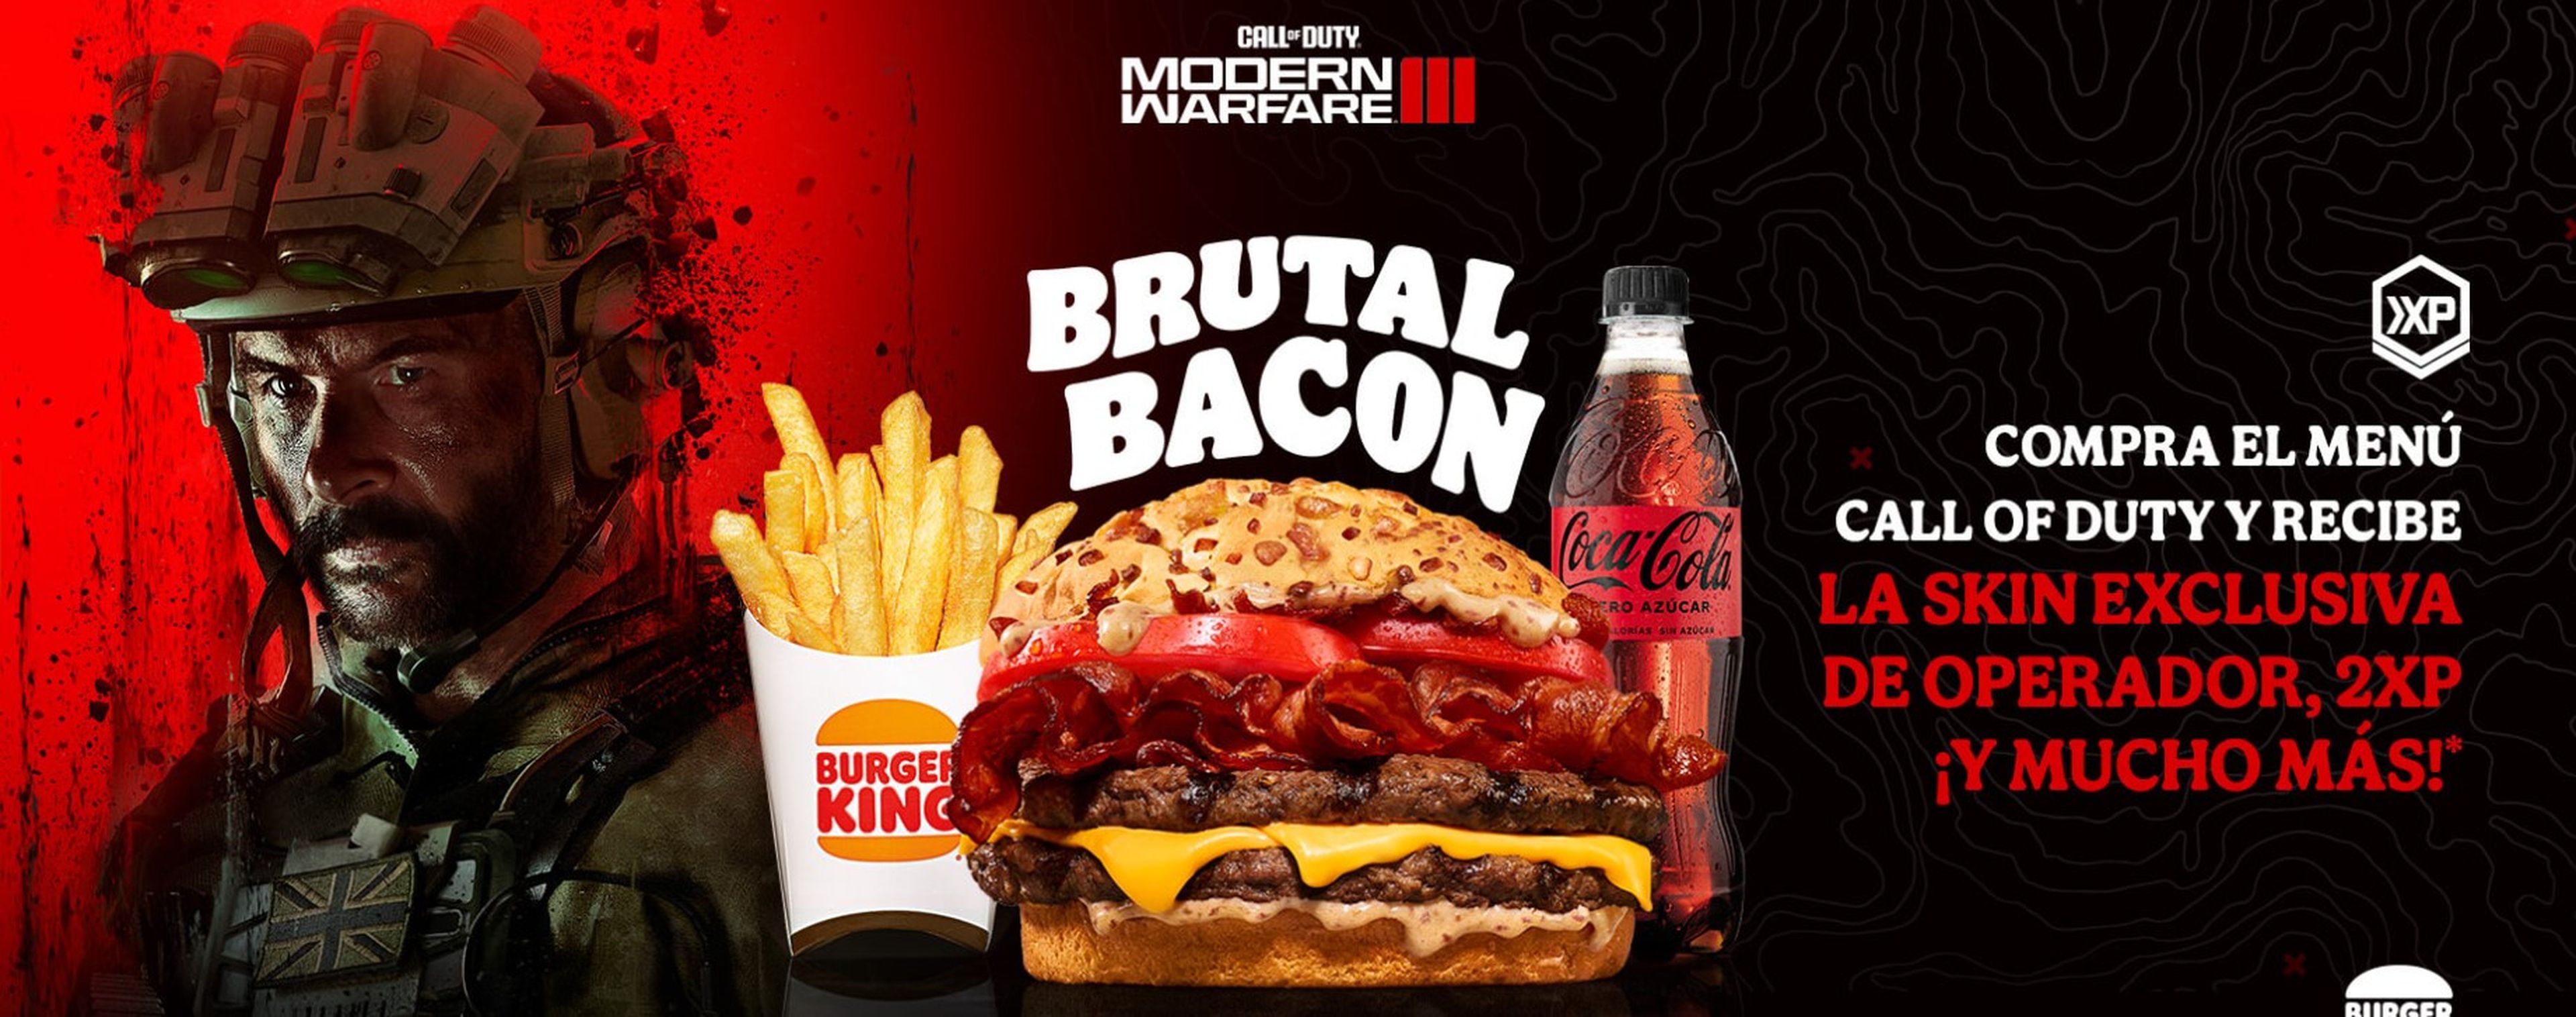 Call of Duty Modern Warfare 3 Burger King